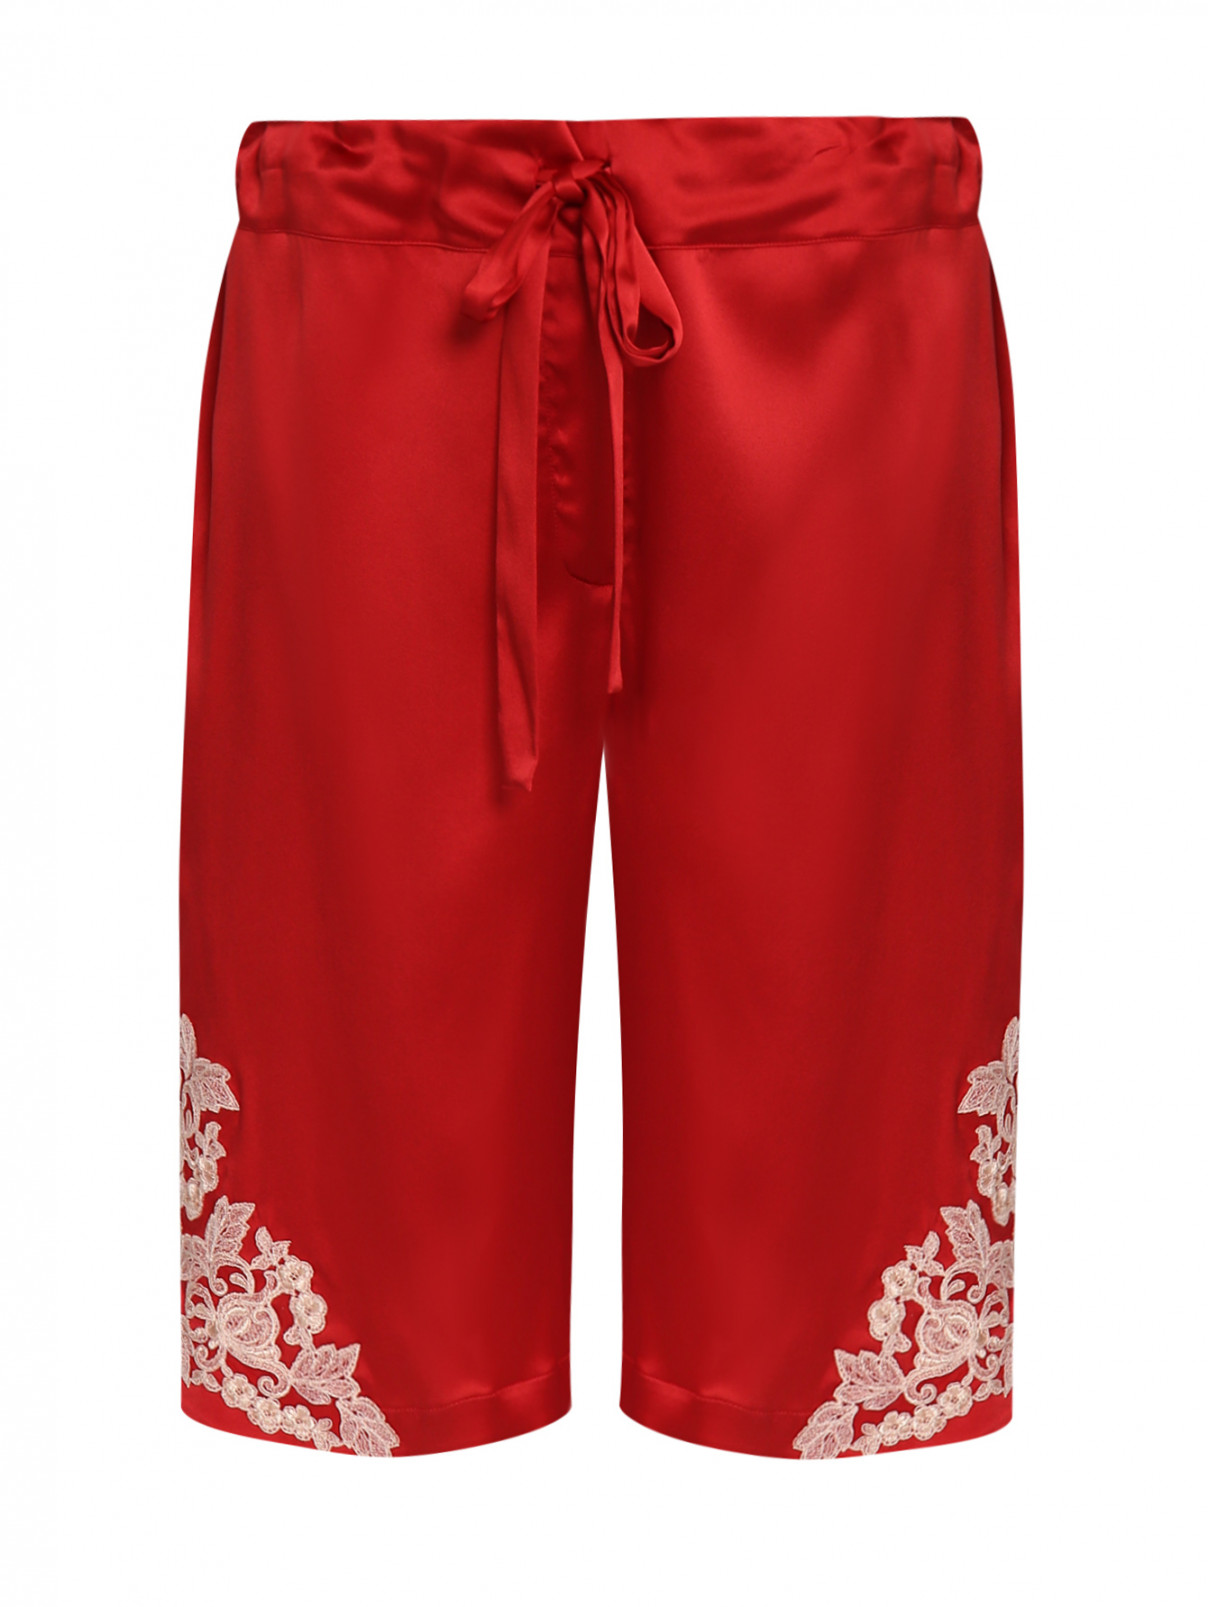 Шорты из шелка с кружевной отделкой La Perla  –  Общий вид  – Цвет:  Красный